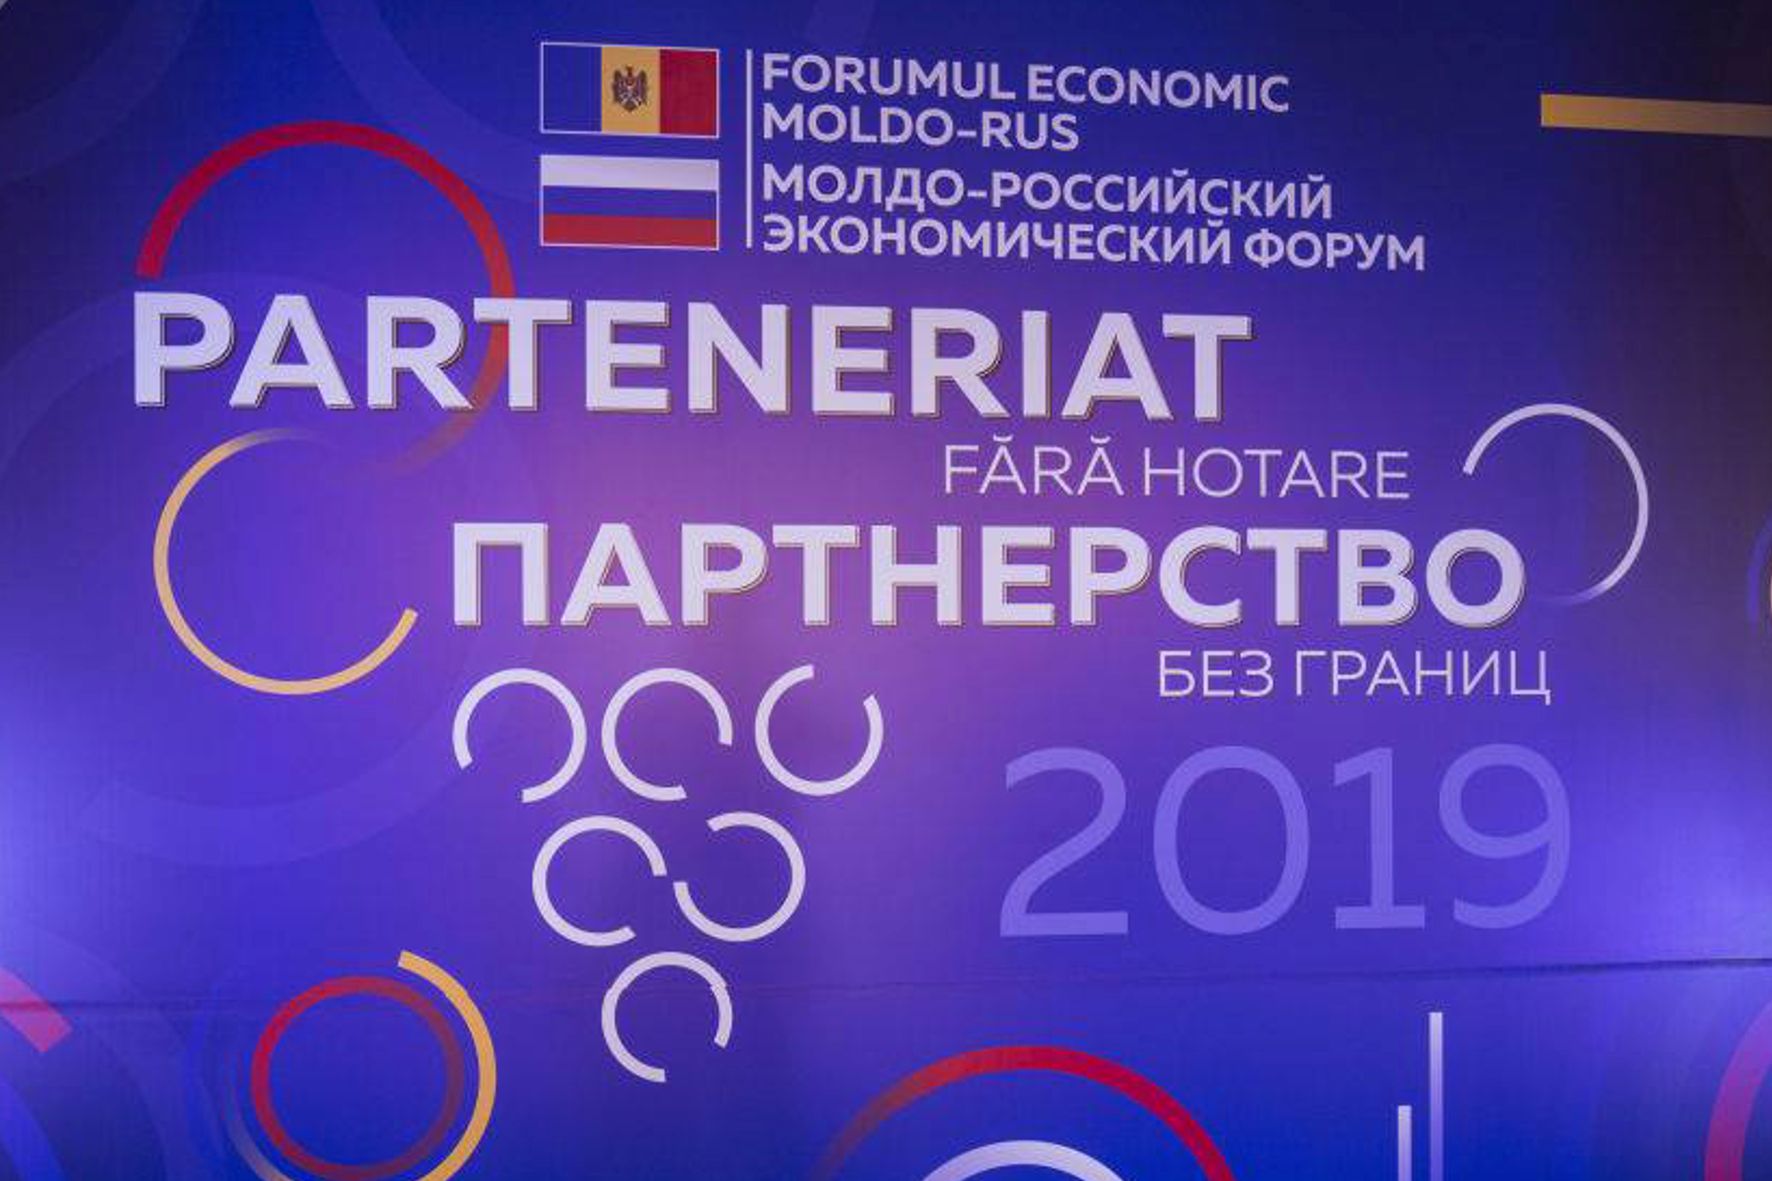 Партнерство без границ: итоги второго Молдо-российского экономического форума